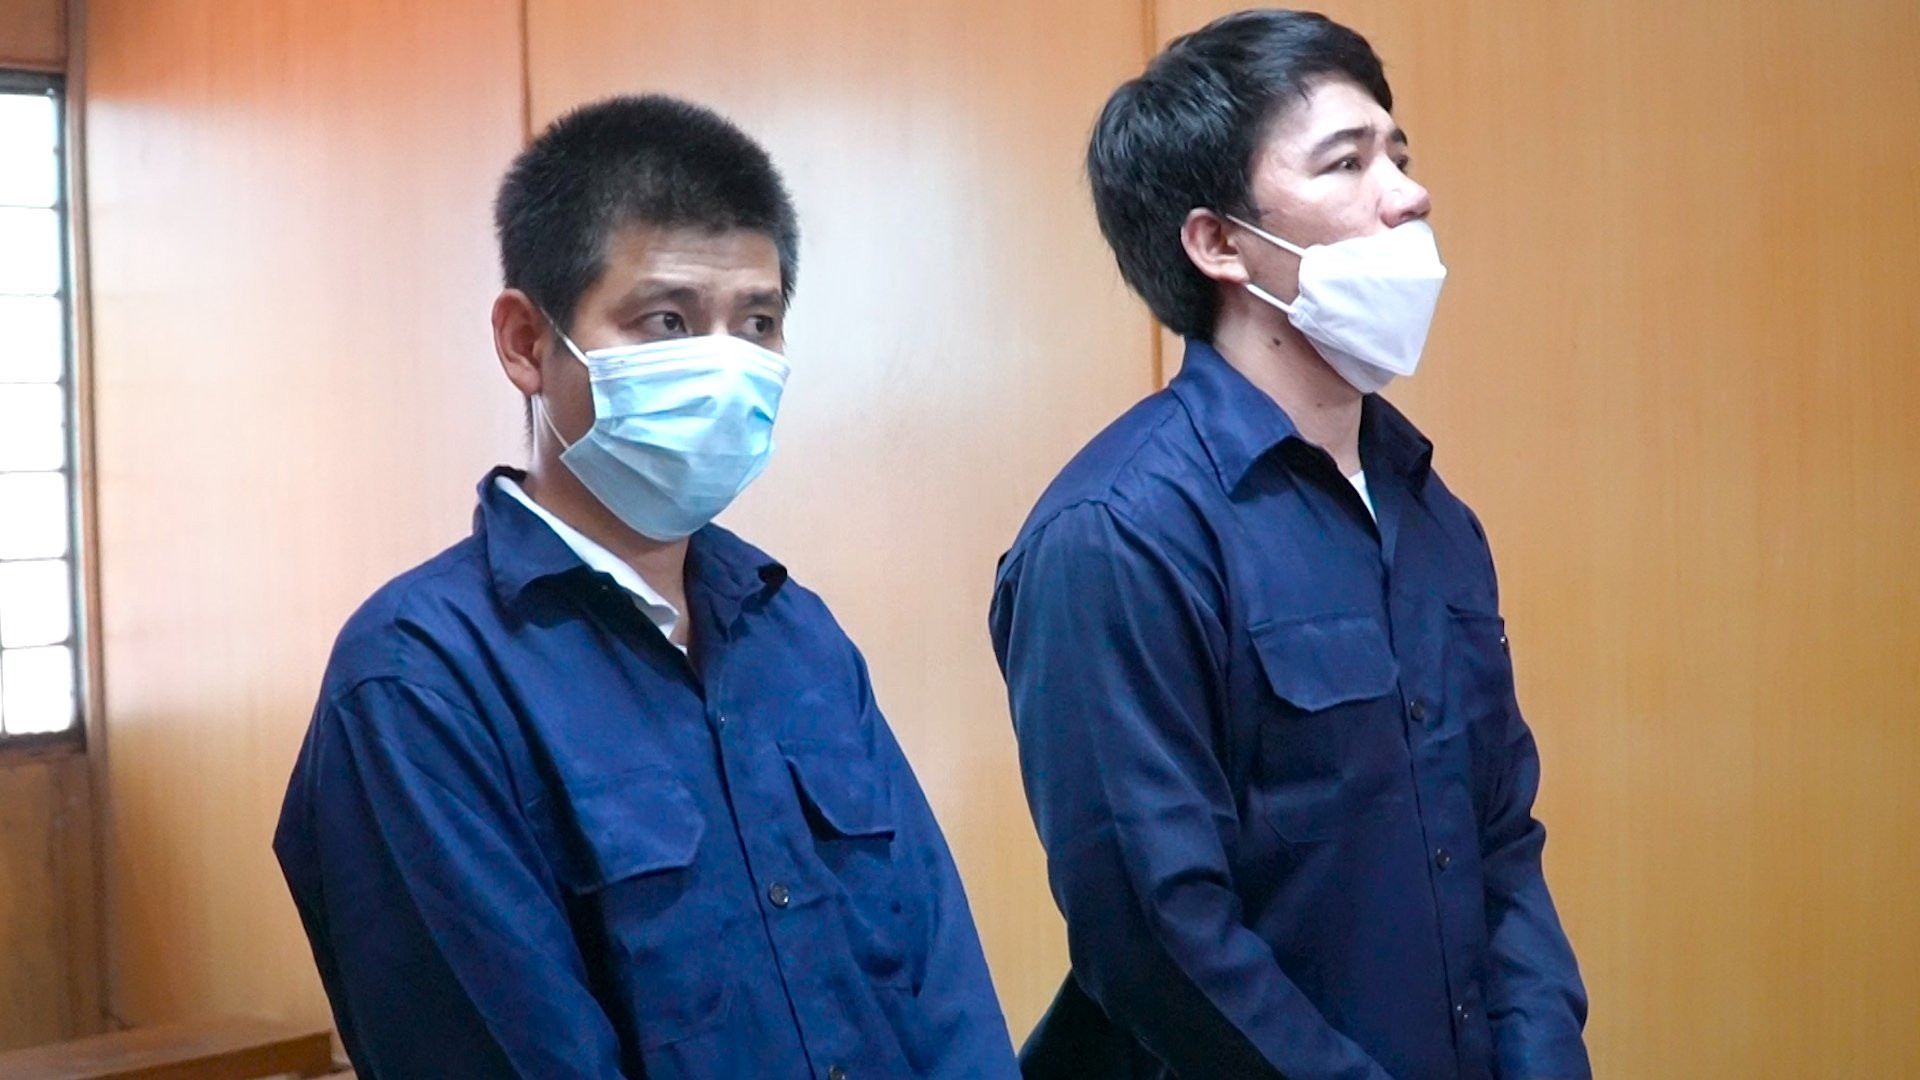 Gây rối ở trại giam Chí Hòa, 2 phạm nhân nhận thêm mỗi người 1 năm 6 tháng tù